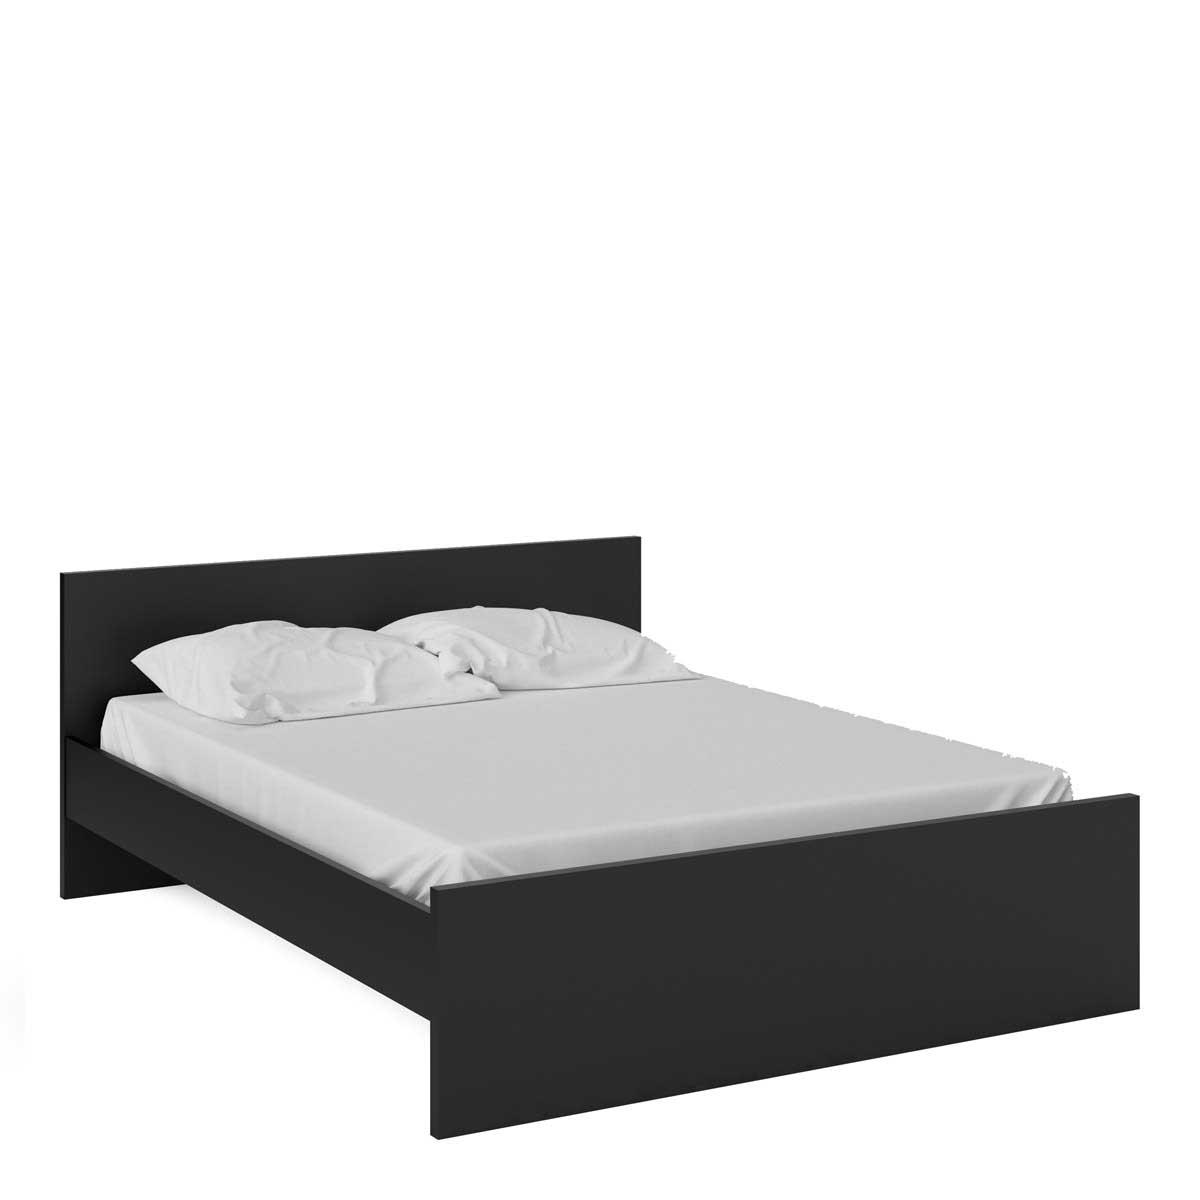 Naia Euro King Bed 160 X 200 In Black, European King Bedding